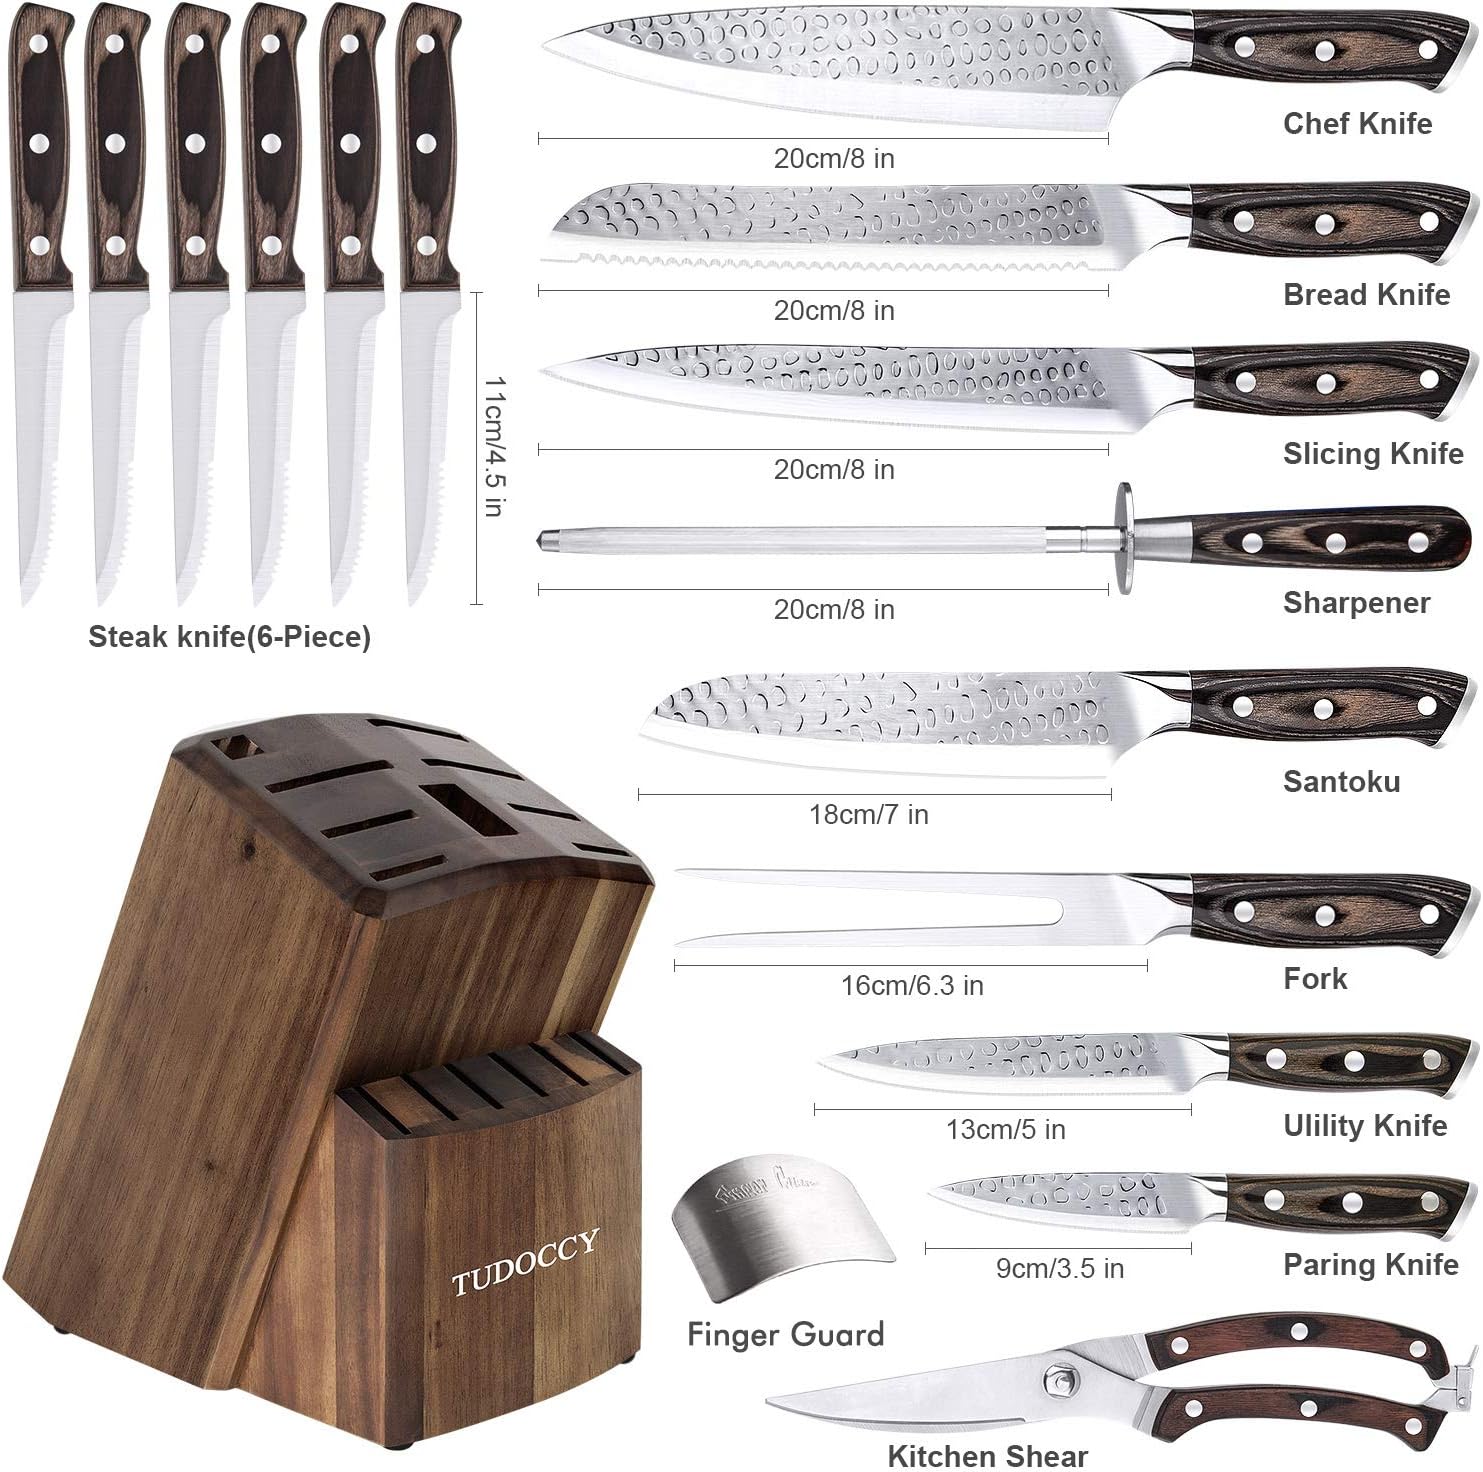  BRODARK Chef Knife Set Professional 4-Pieces kitchen